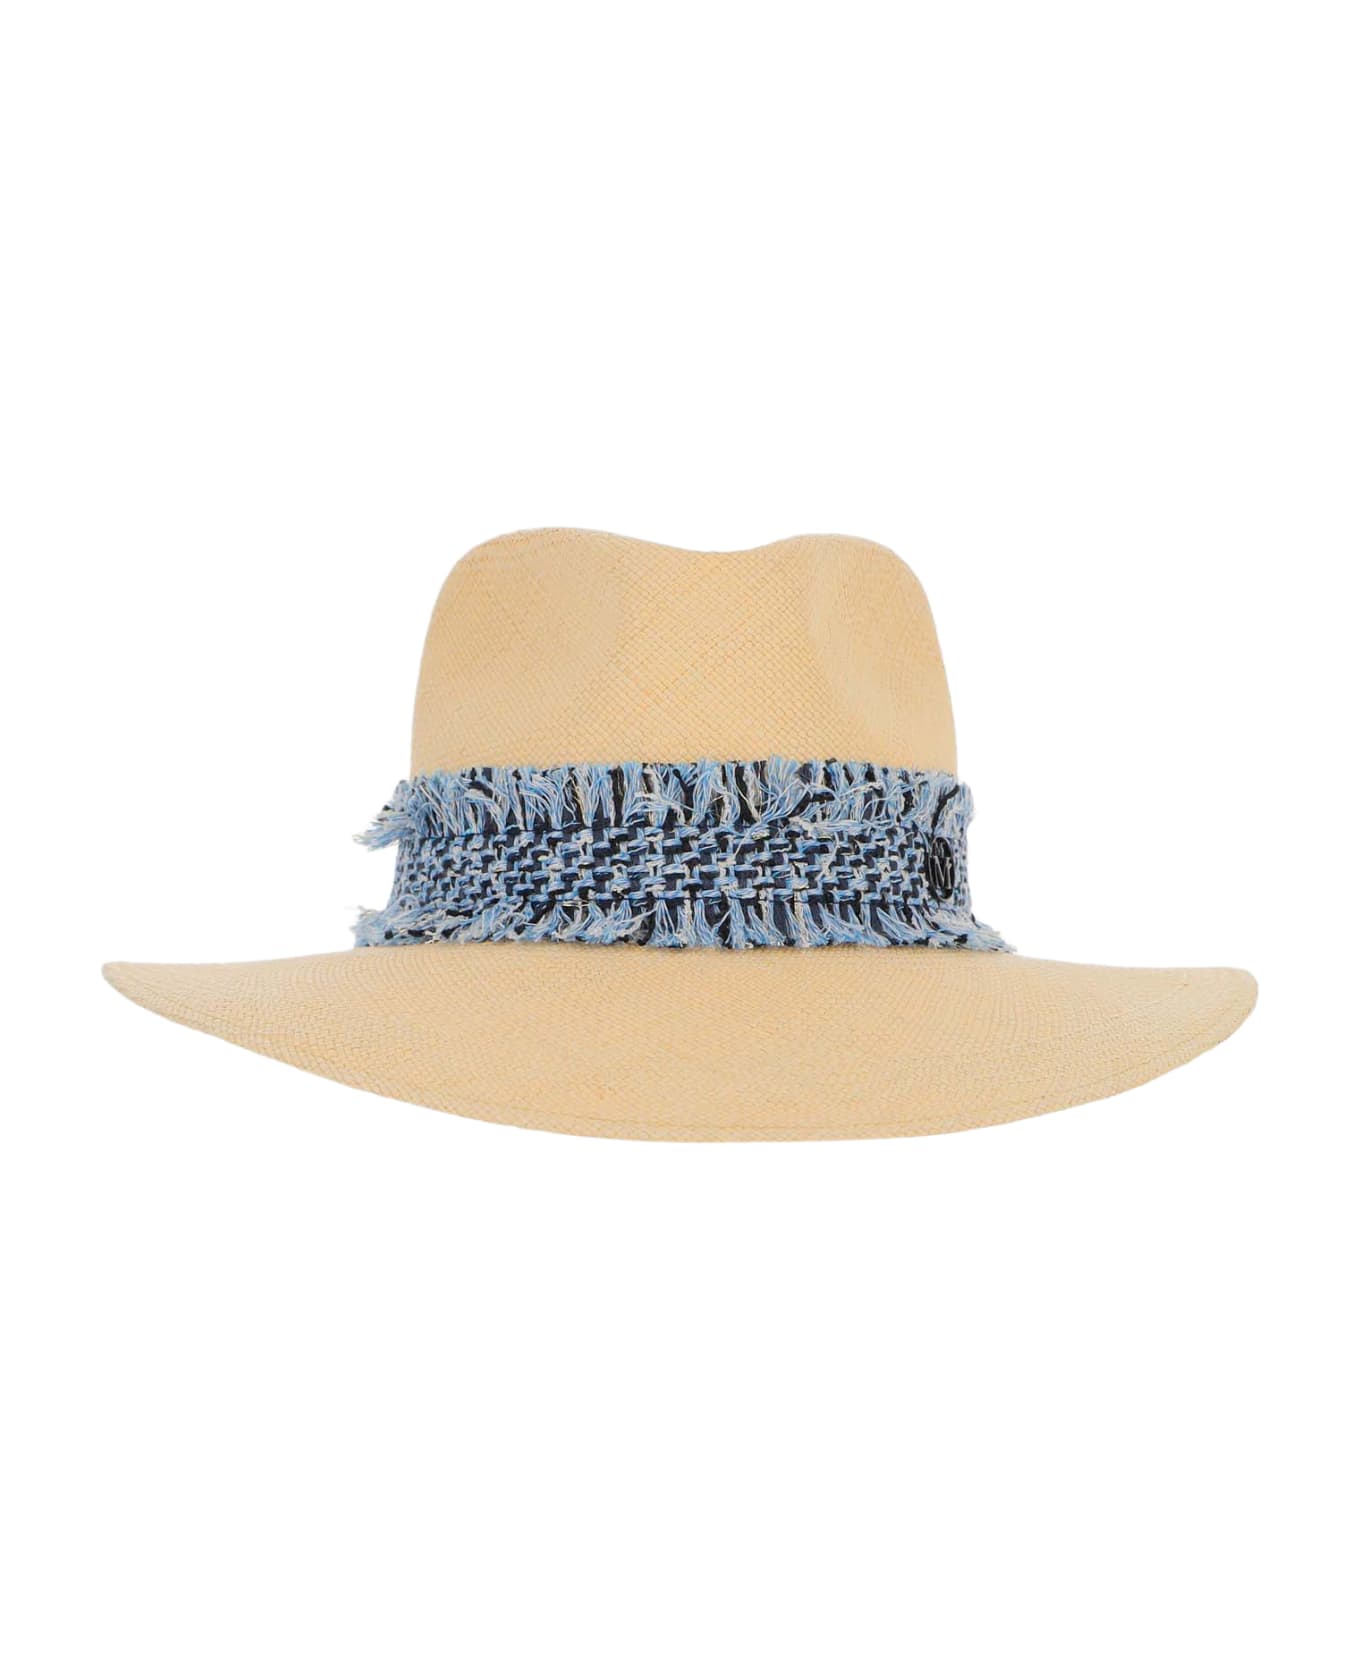 Maison Michel Henrietta Staw Fedora Hat - Beige 帽子